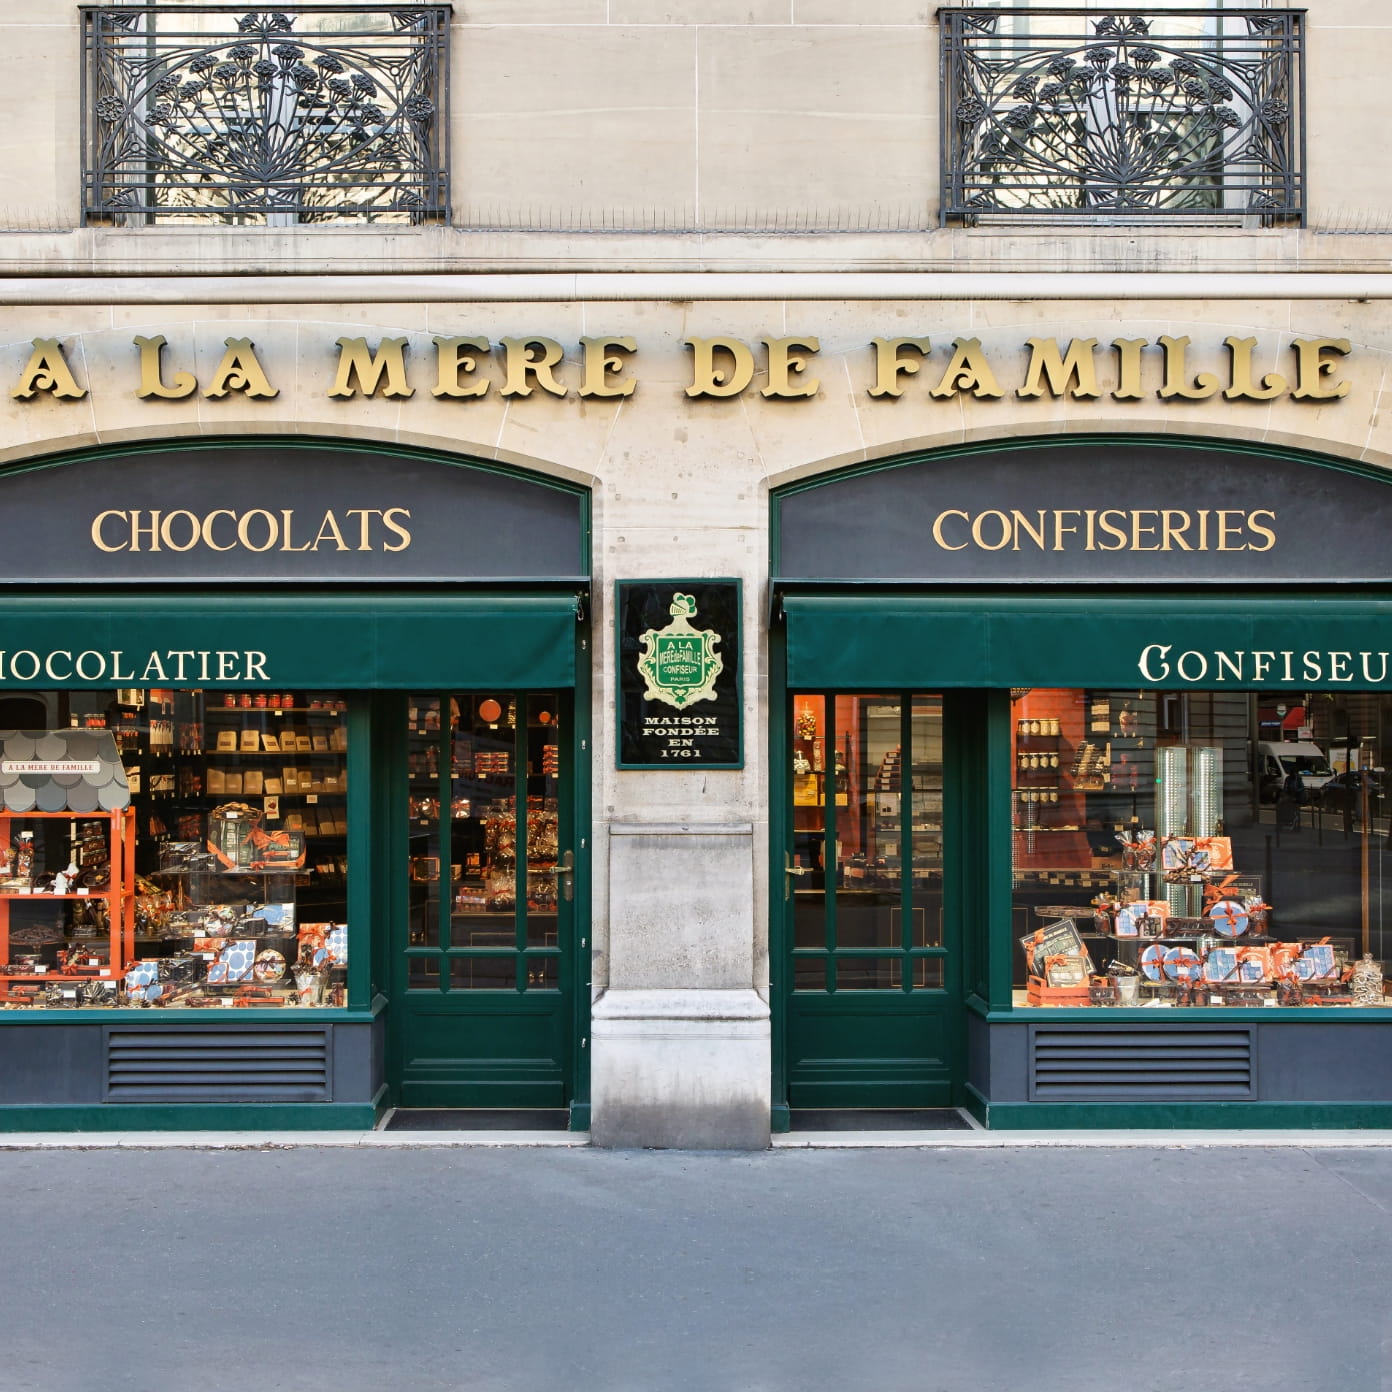 Tour de France des gourmandises et confiseries - ROY Chocolatier